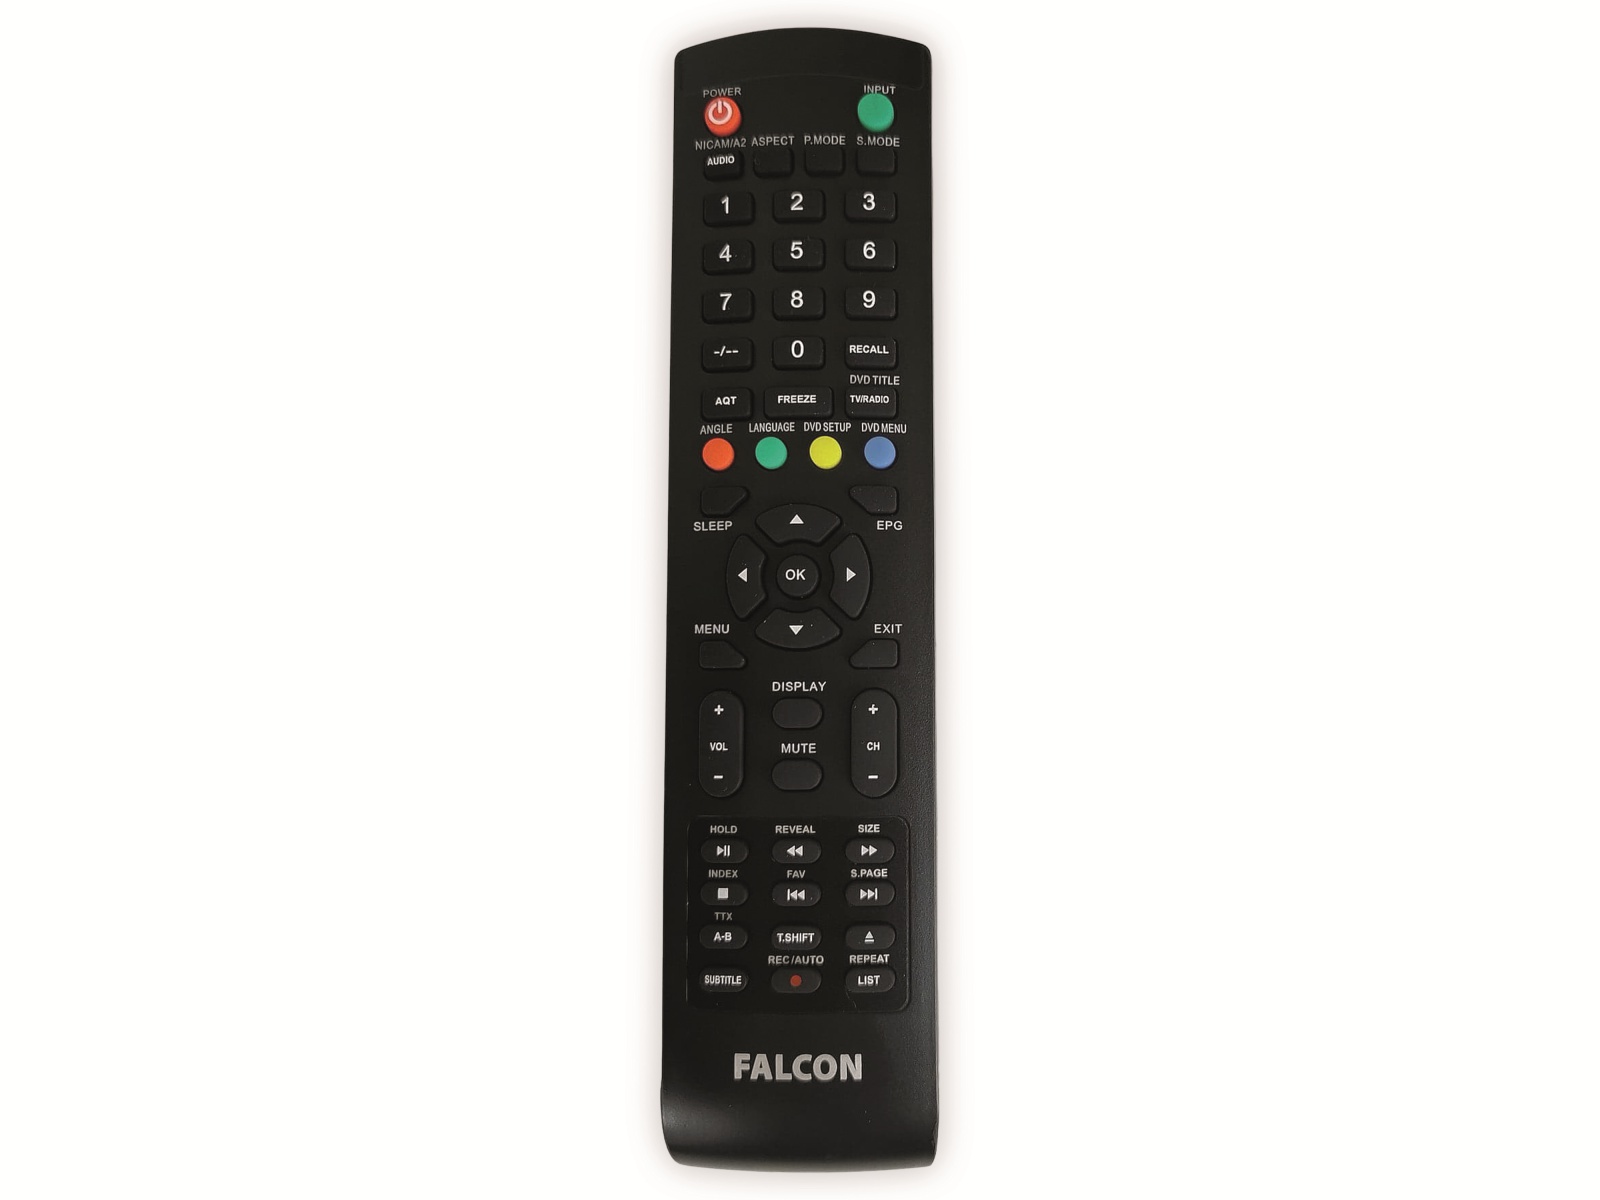 FALCON Easyfind TV Camping Set, inkl. LED-TV 56 cm (22")